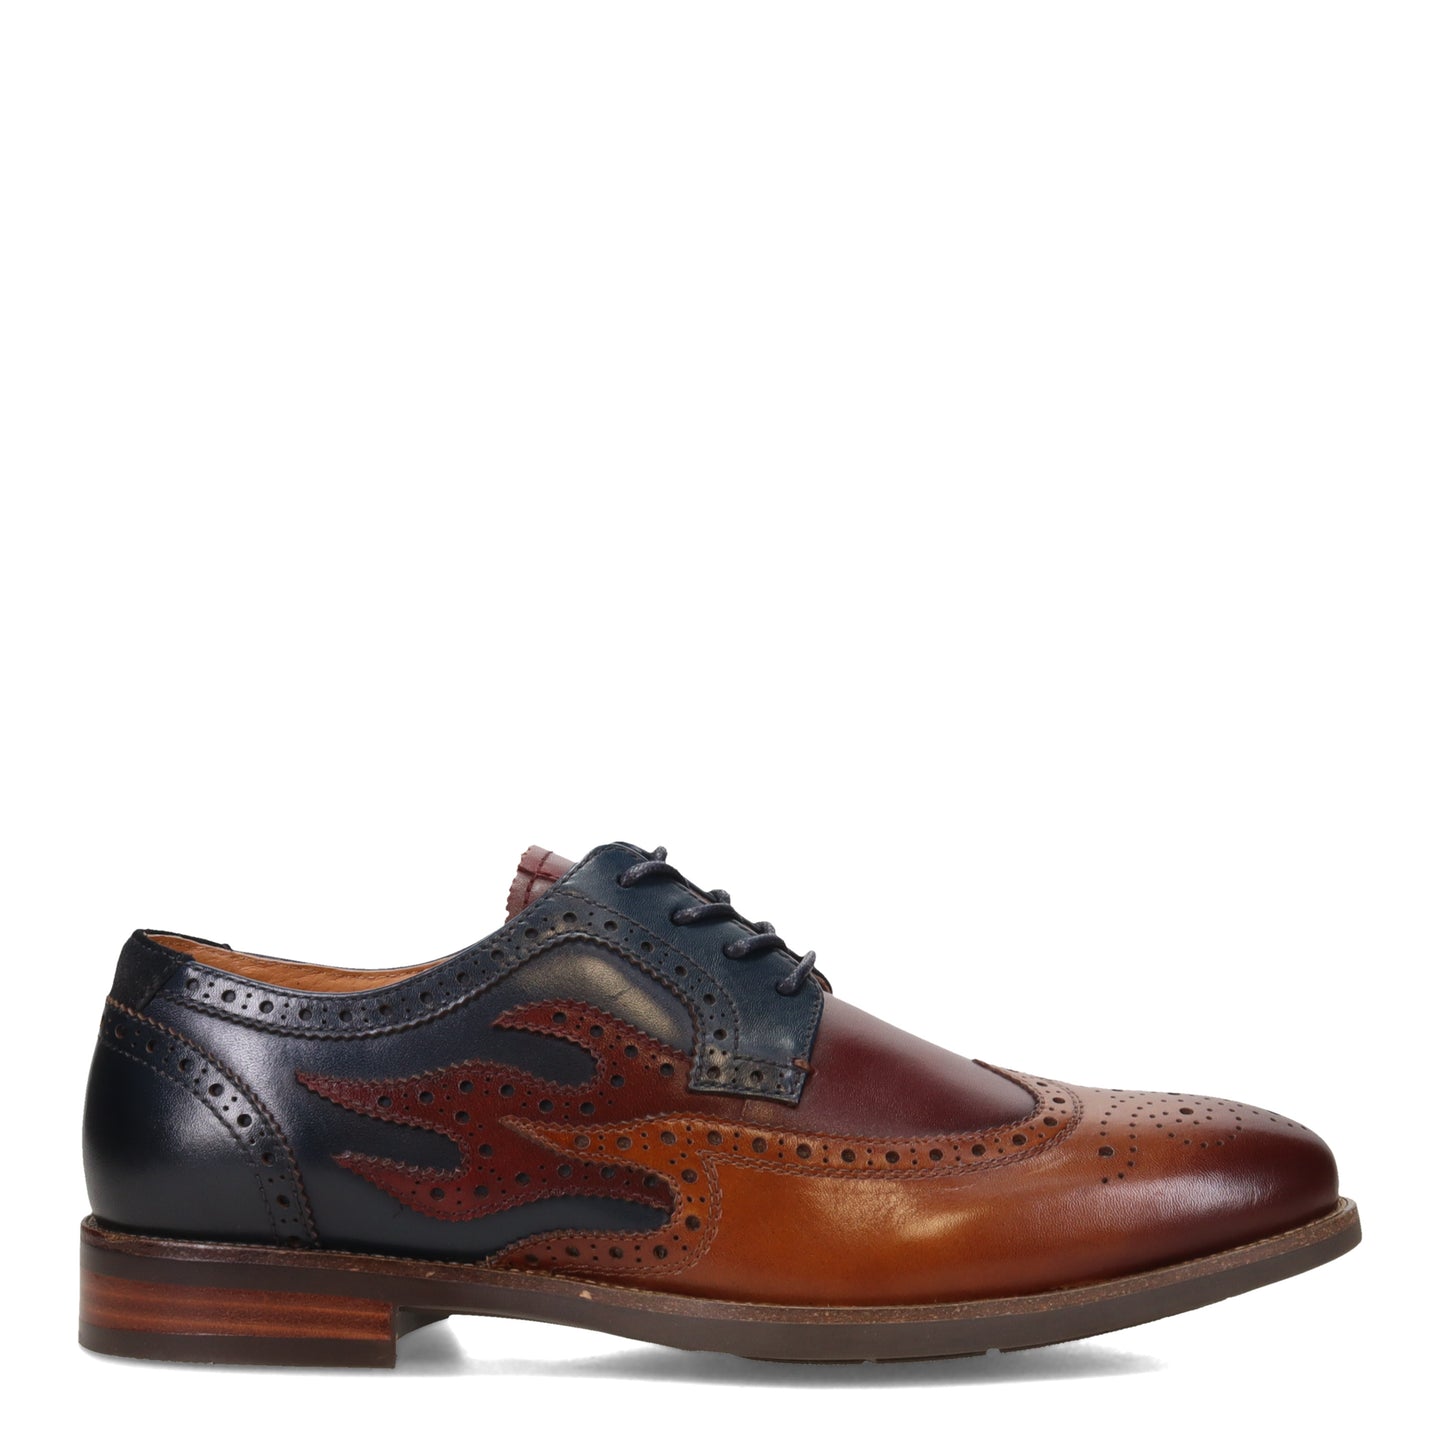 Peltz Shoes  Men's Florsheim Uptown Spicy Wingtip Oxford COGNAC NAVY 15197-229